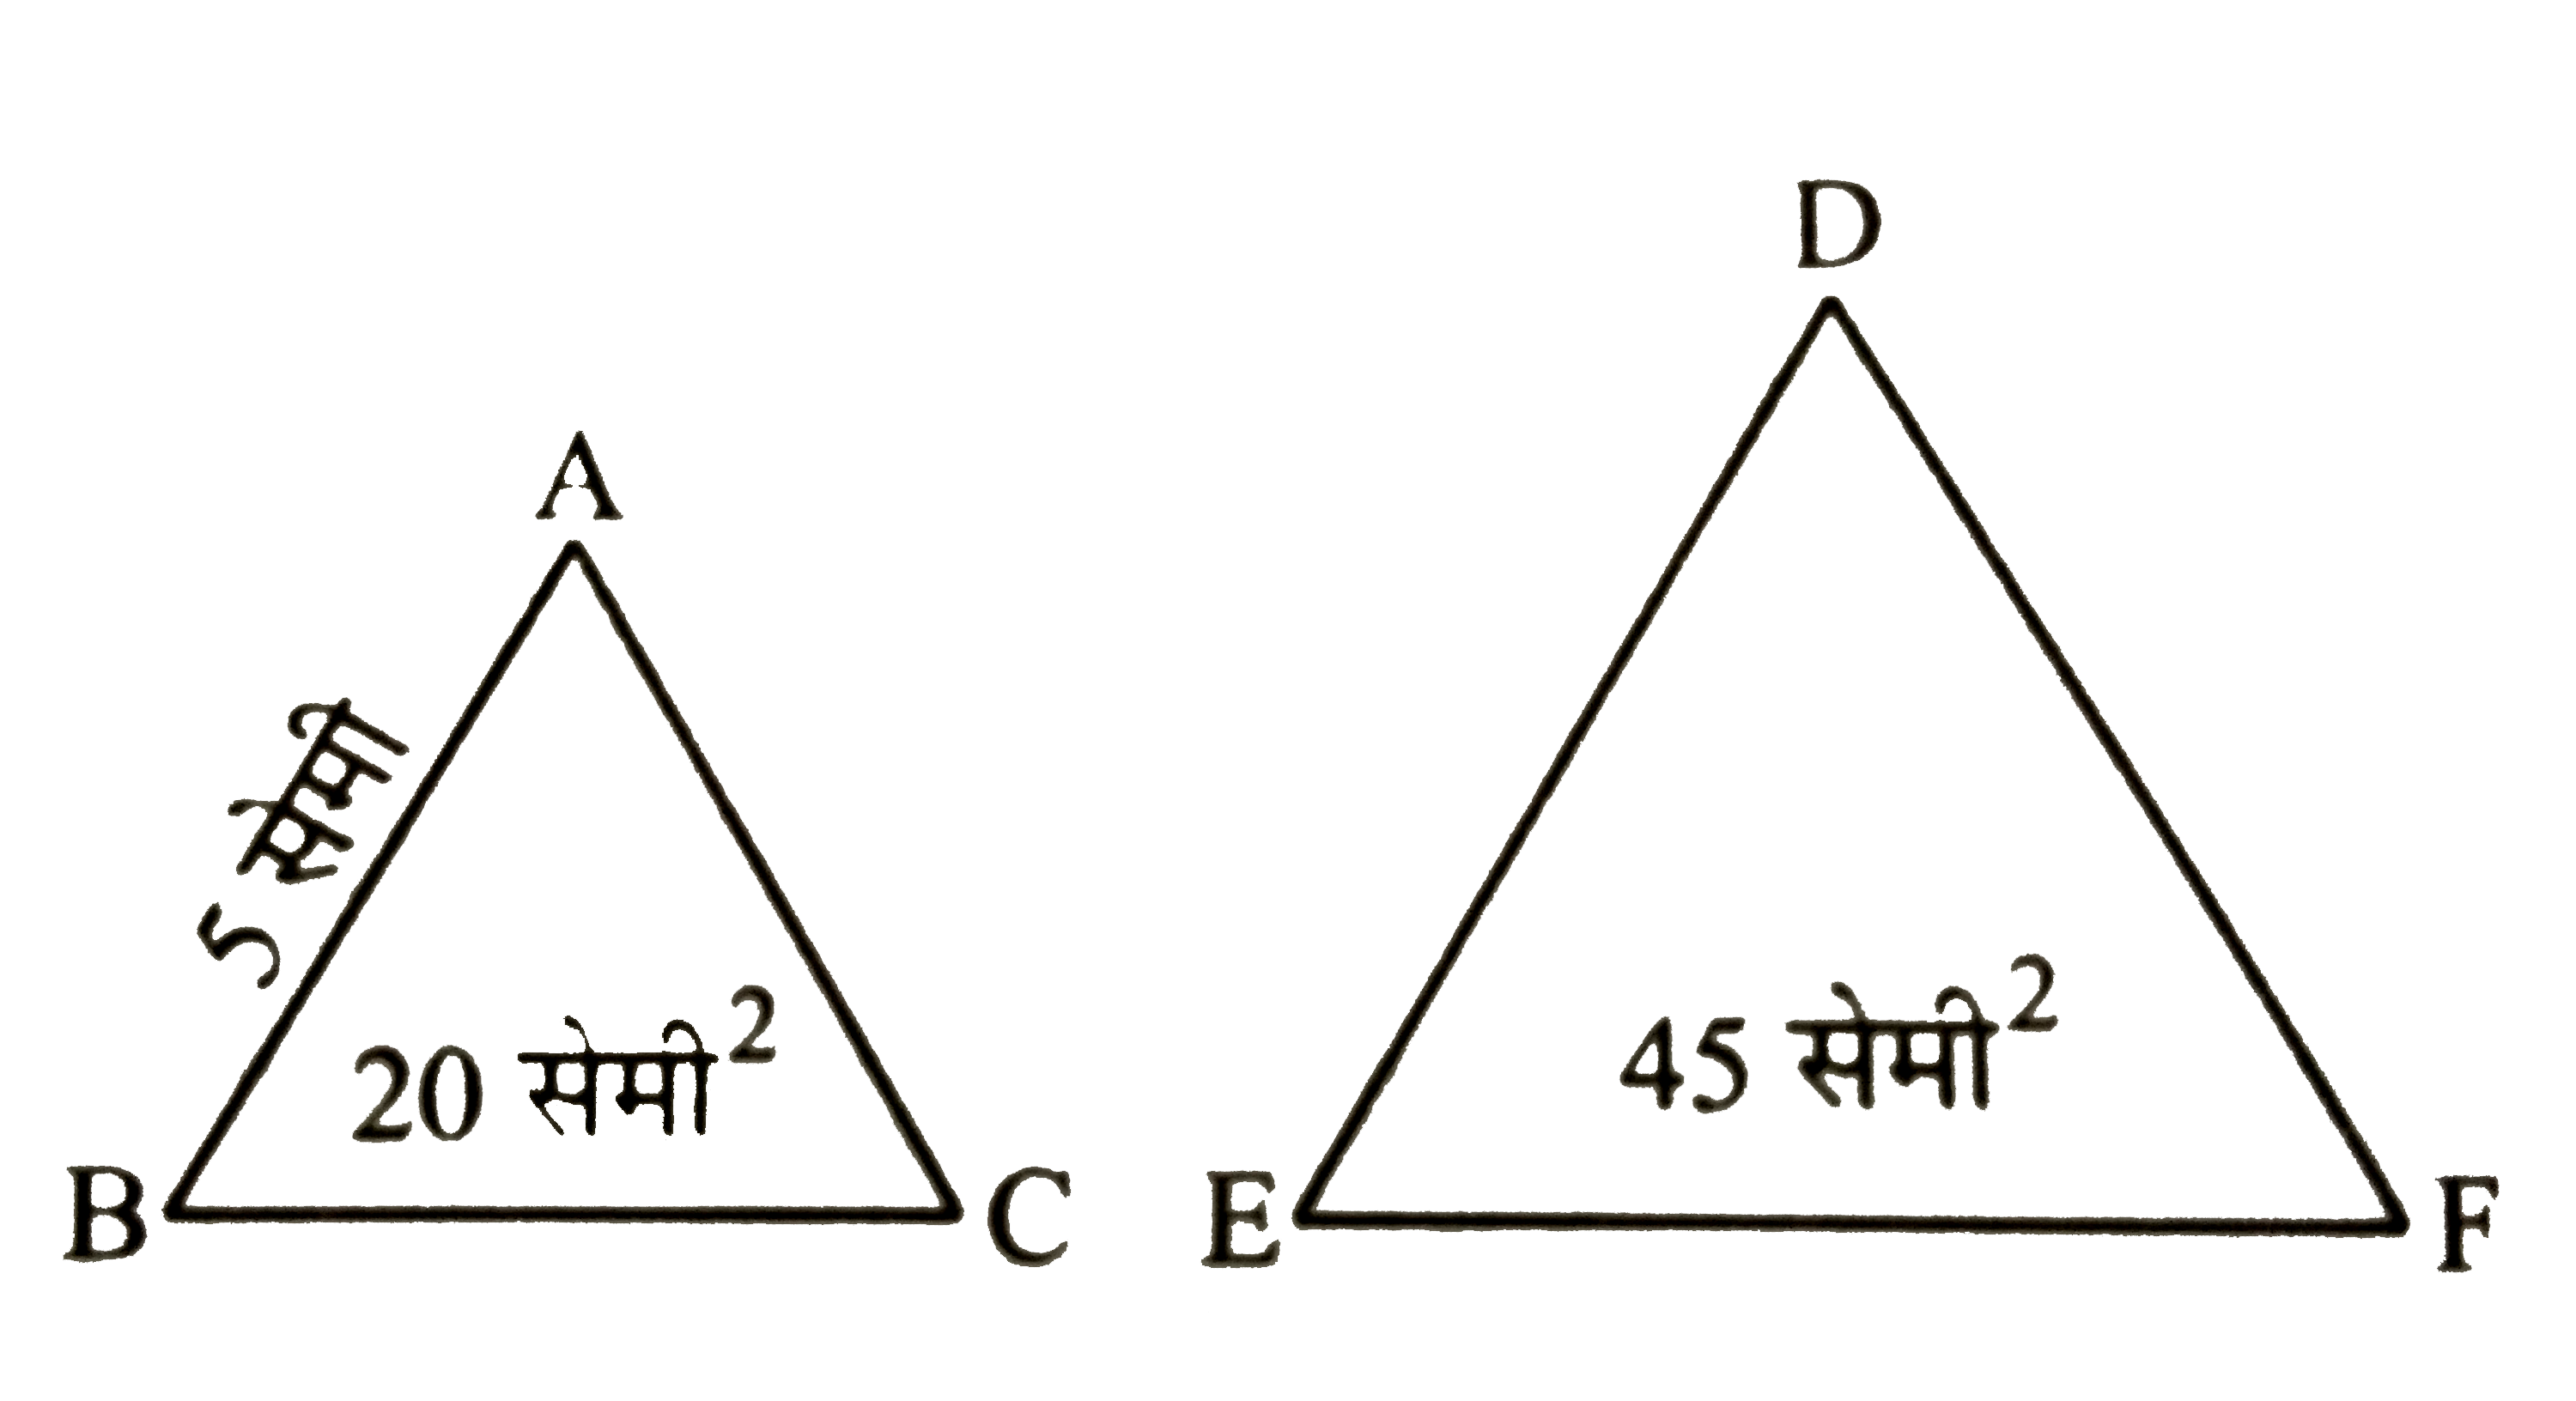 दिये गये चित्र में,triangle ABC ~ triangle DEF, AB  = 5  सेमी (triangle ABC) का क्षेत्रफल  = 20 सेमी